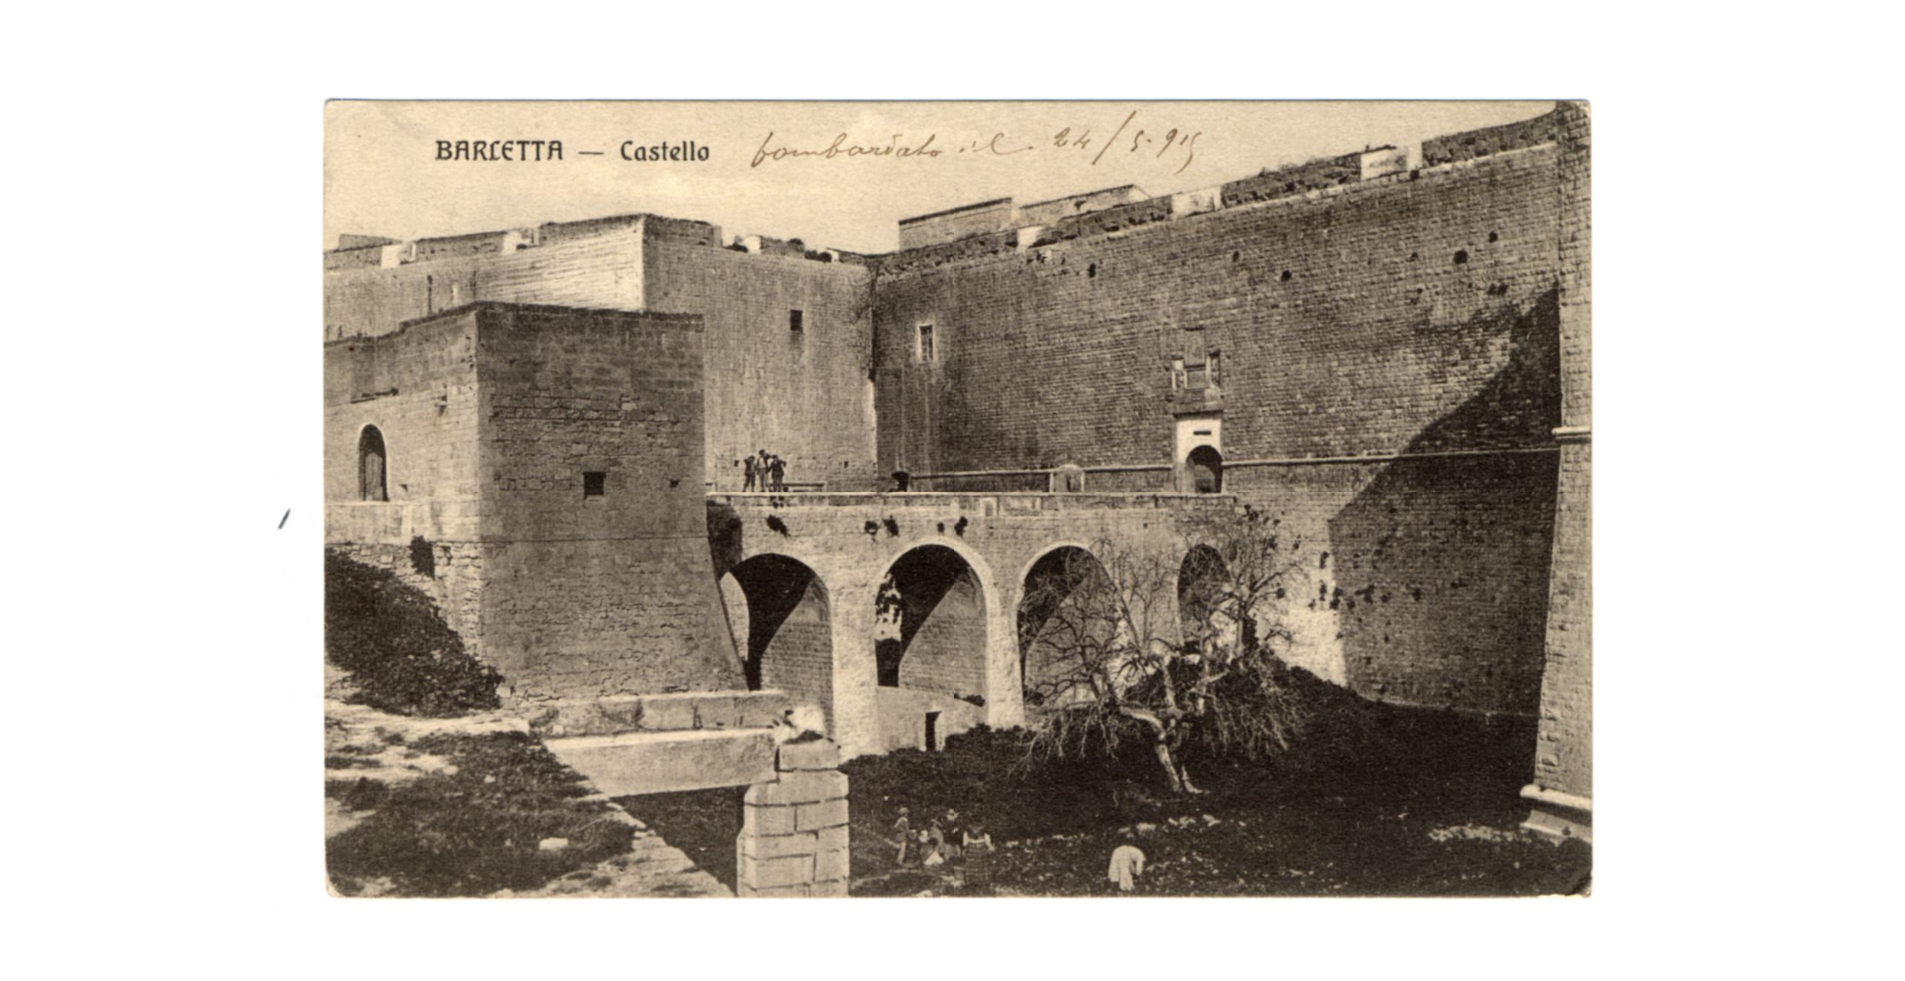 Fotografo non identificato, Barletta - Castello bombardato il 24-5-1915, 1915, FFC040032